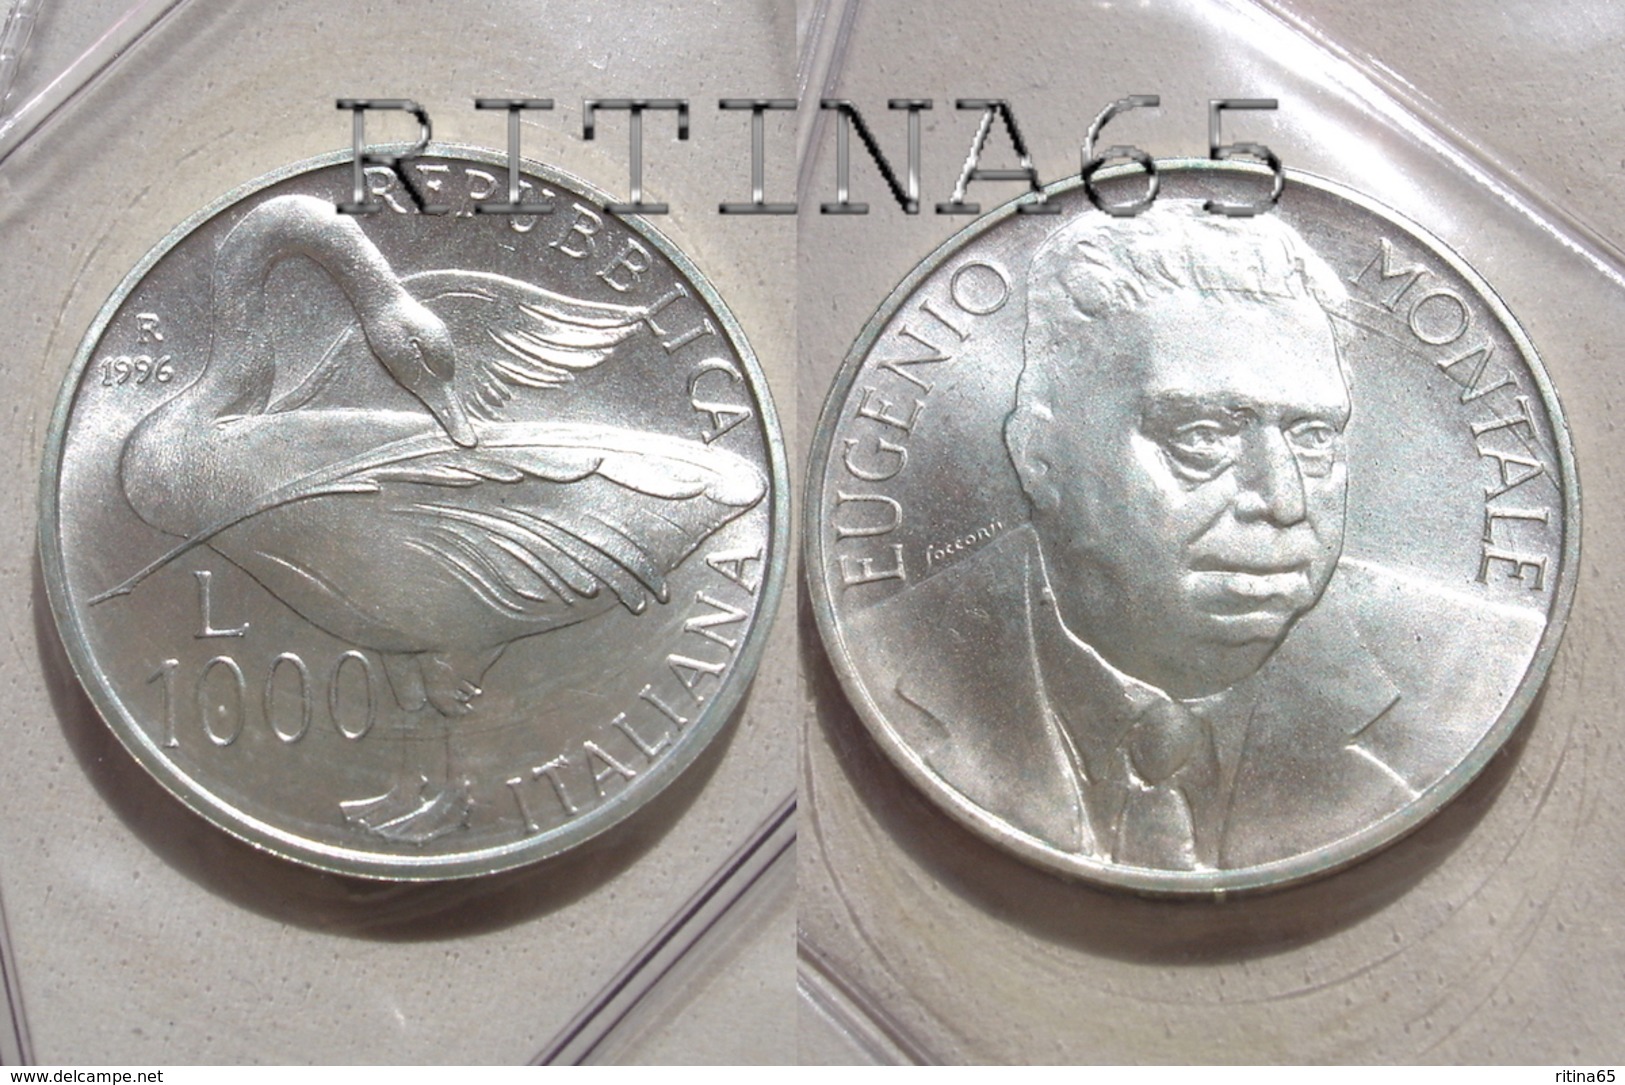 ITALIA 1000 LIRE ARGENTO 1996 EUGENIO MONTALE FDC SIGILLATA DA SET ZECCA - 1 000 Liras